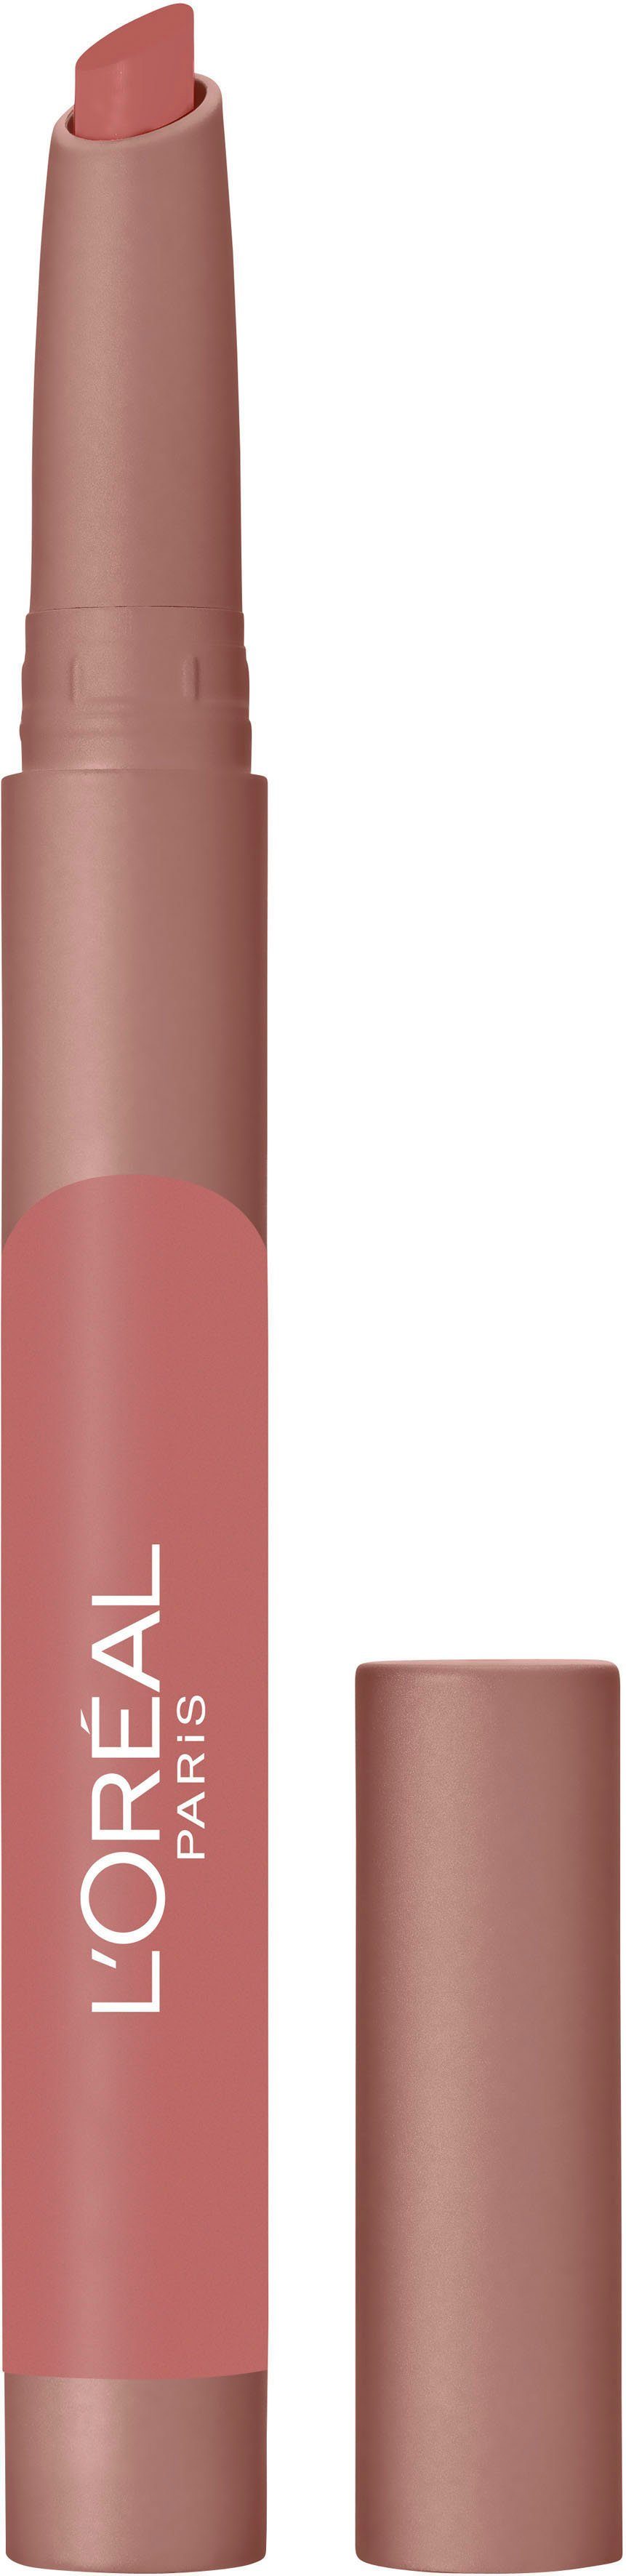 L'ORÉAL PROFESSIONNEL PARIS L'ORÉAL PARIS Lippenstift Infaillible Matte Lip Crayon 102 Caramel Blondie